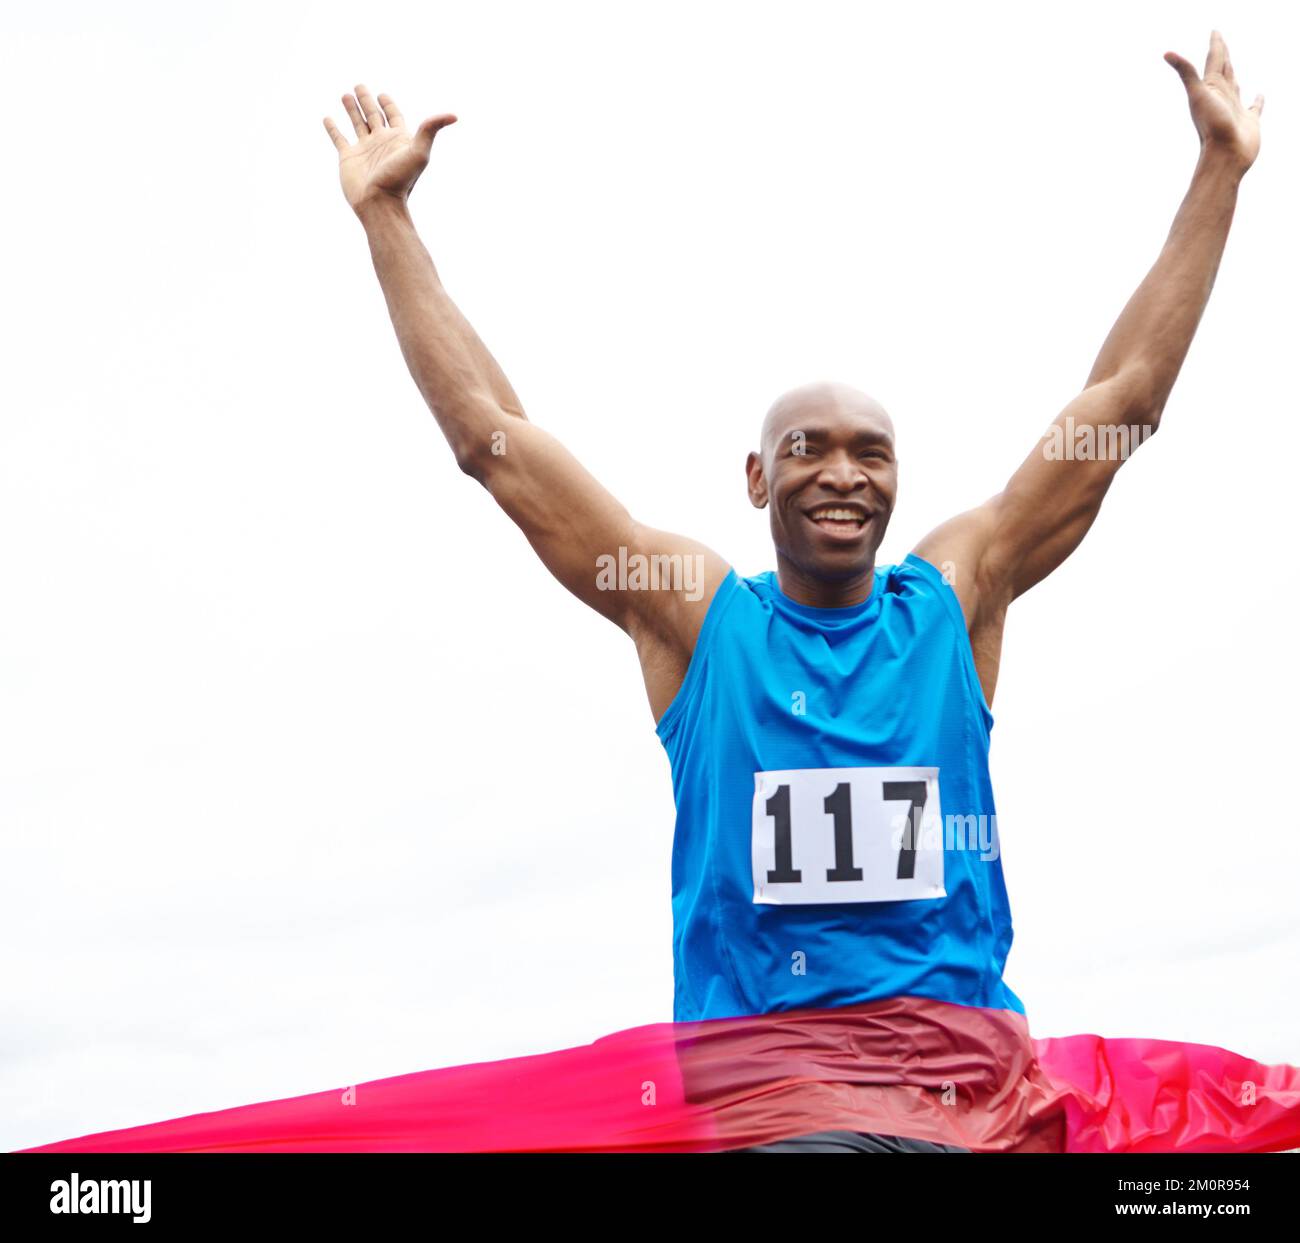 Célébrant sa victoire. Vue courte d'un athlète masculin gagnant une course avec ses bras relevés et un sourire sur son visage. Banque D'Images